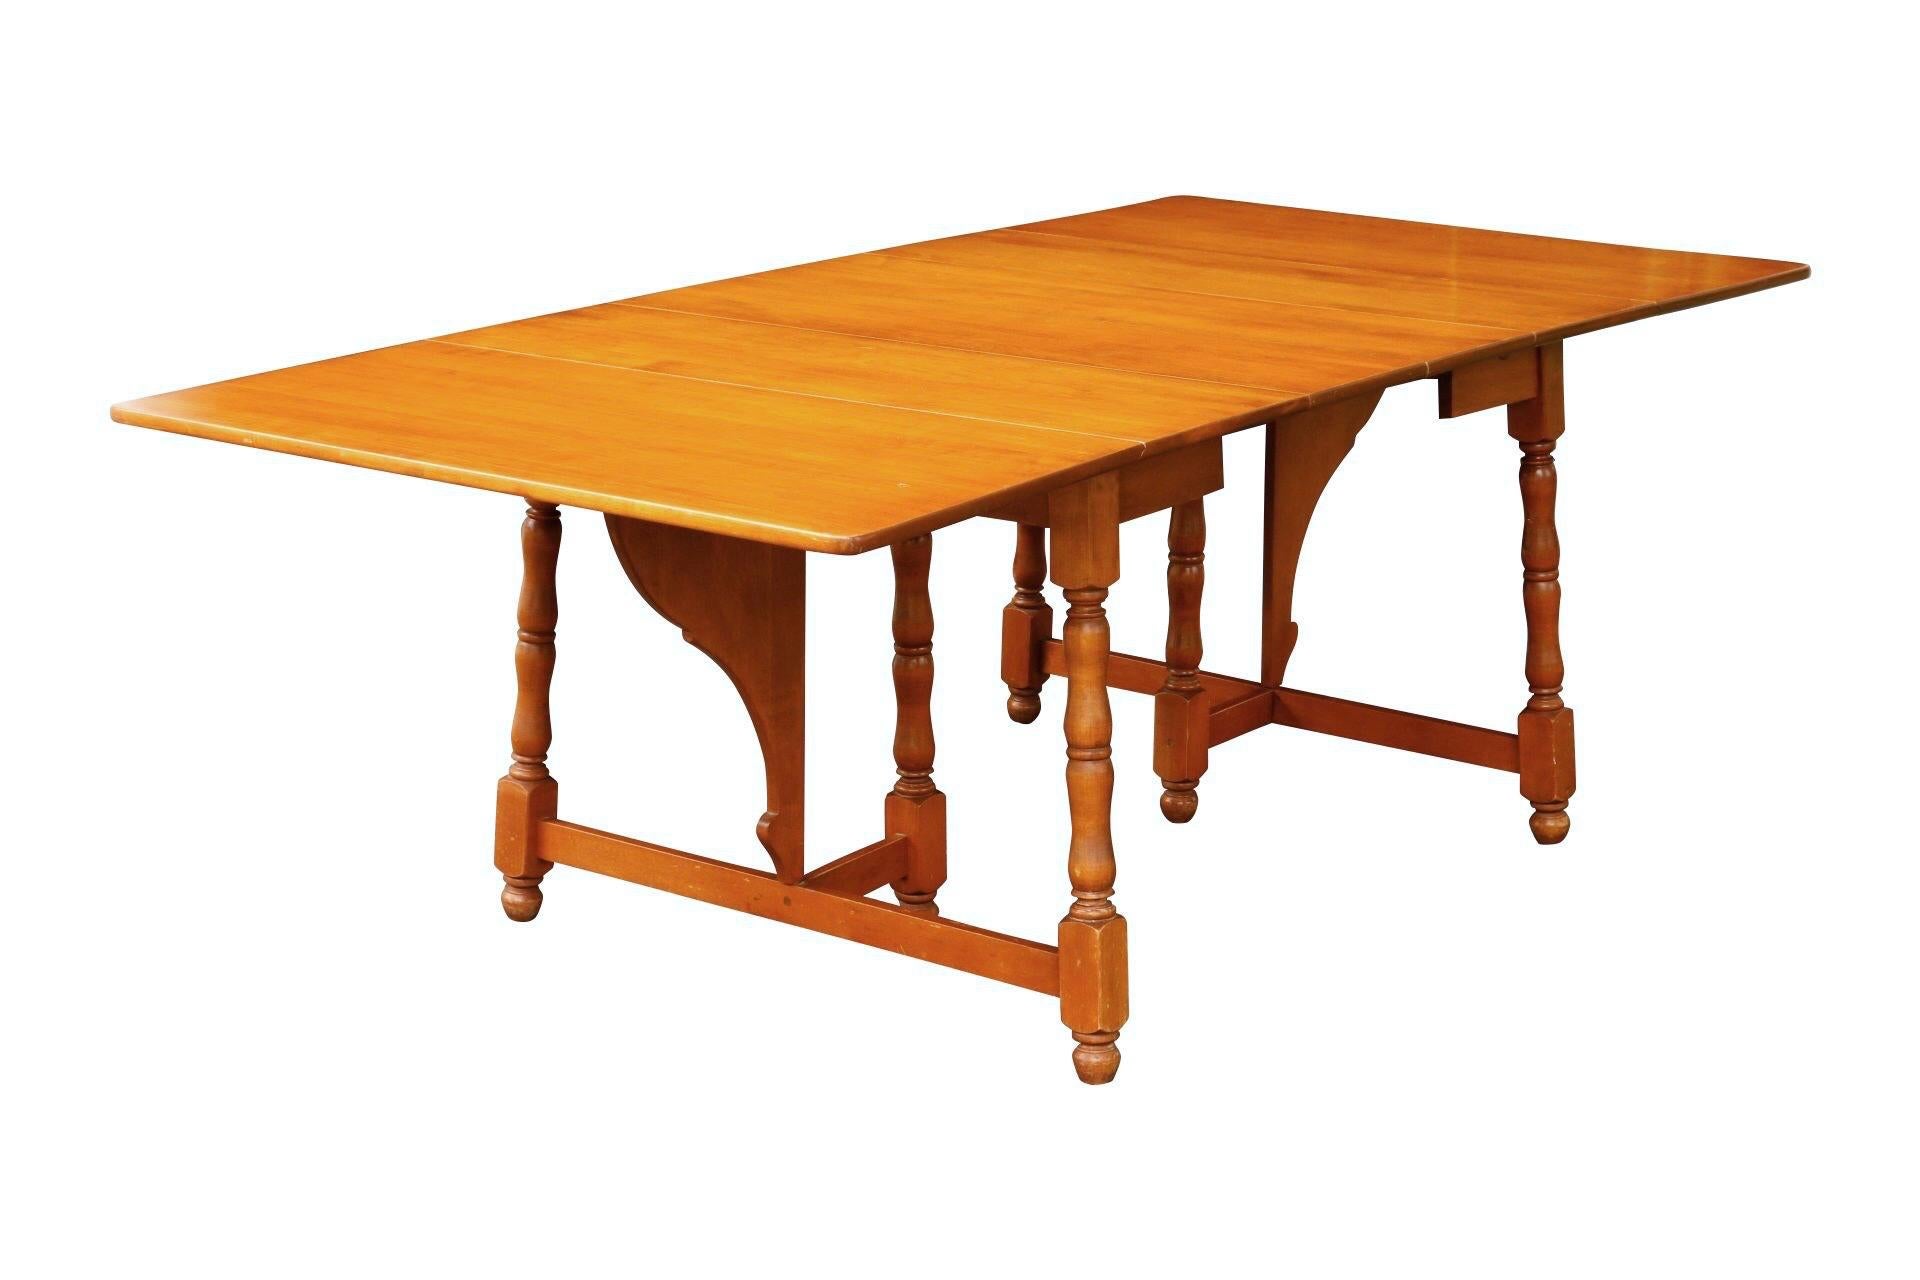 Ein Esstisch mit Klappe im traditionellen Stil, hergestellt von Heywood Wakefield. Die ausklappbaren Blätter lassen sich mit Schmetterlingshaltern anheben und bilden einen rechteckigen Tisch mit sechs Sitzplätzen. Der Tisch lässt sich um zwei